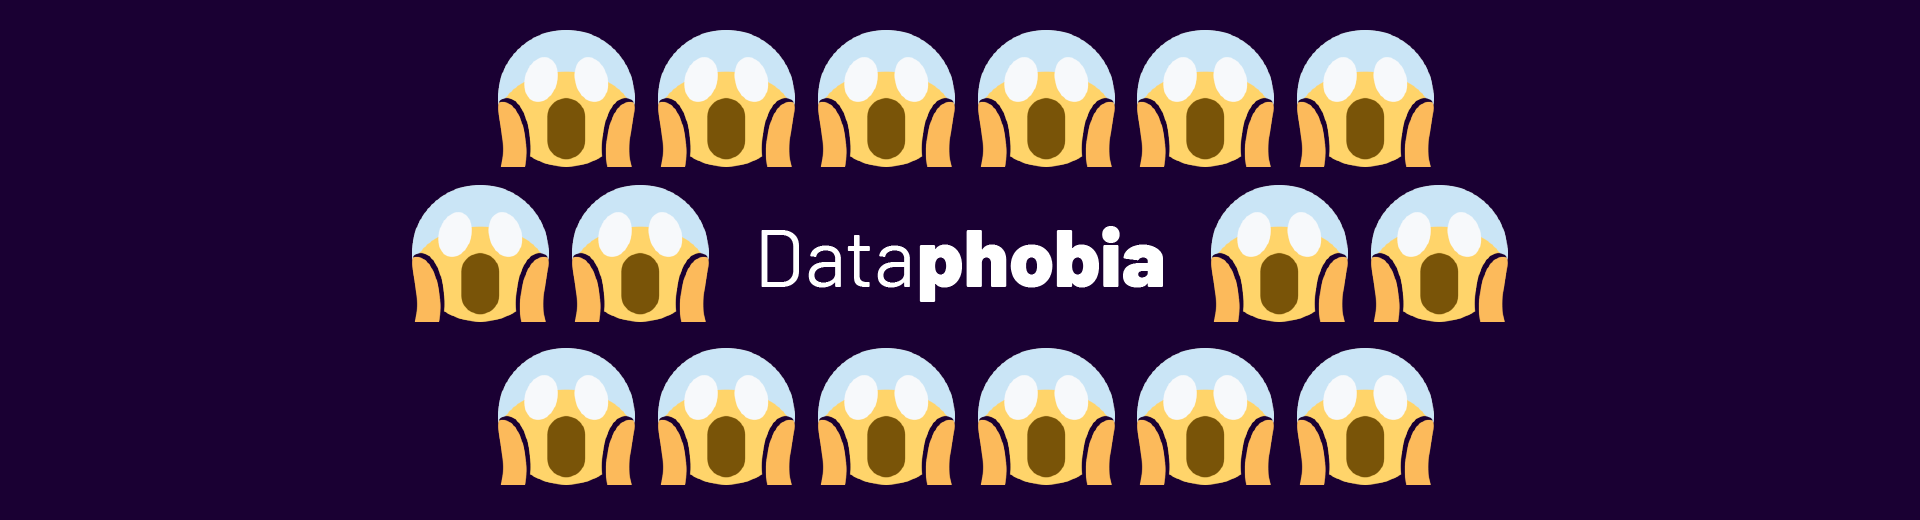 Dataphobia : quand Wikipédia révèle nos peurs enfouies